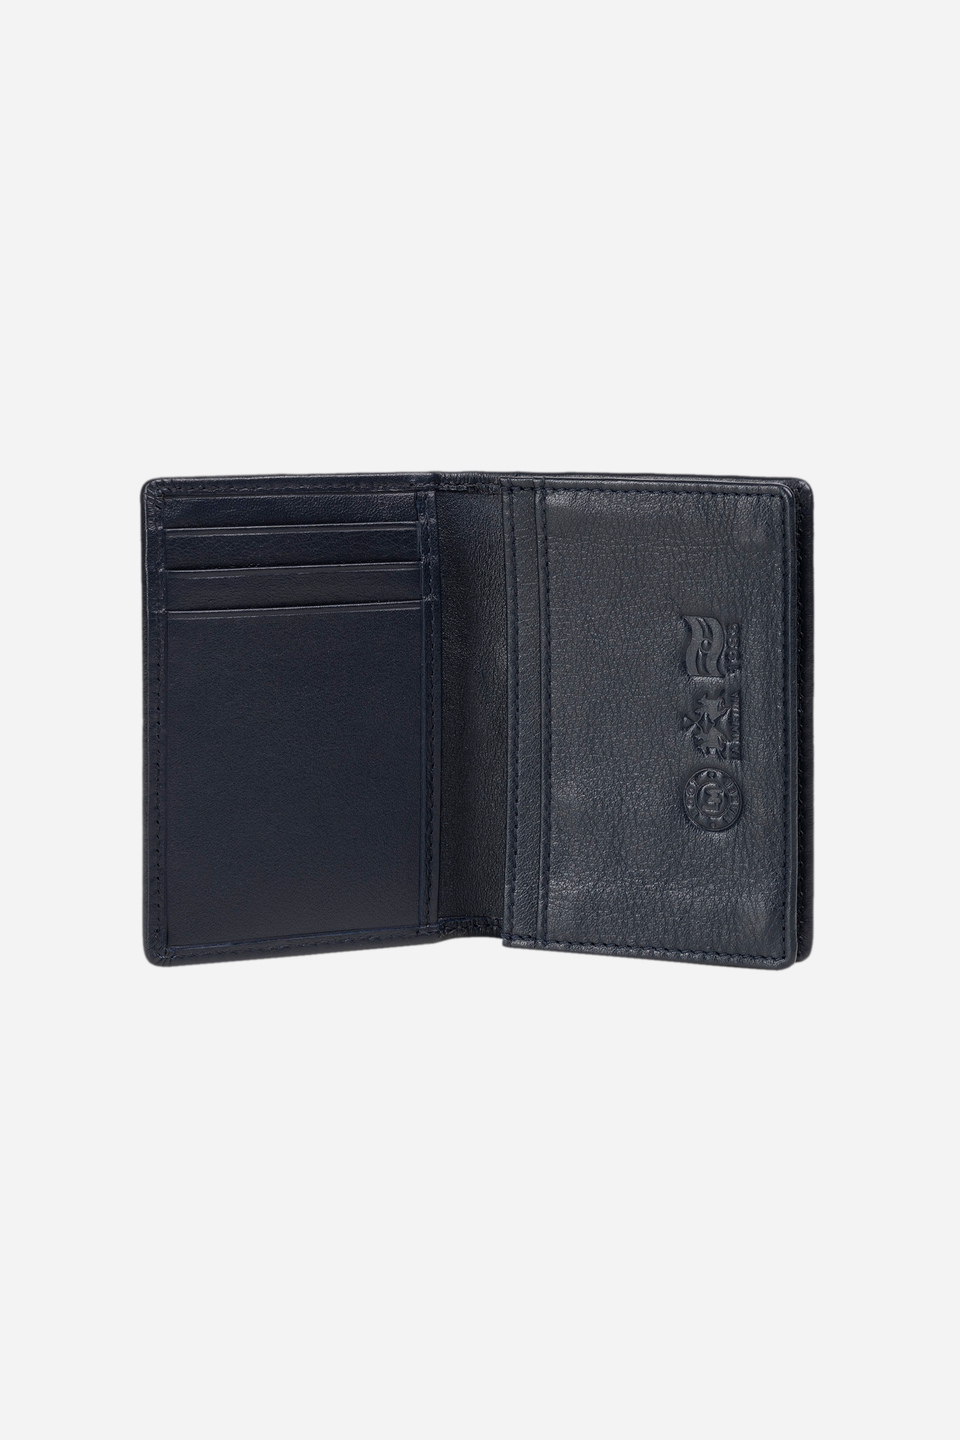 Men's leather wallet - Lopez | La Martina - Official Online Shop